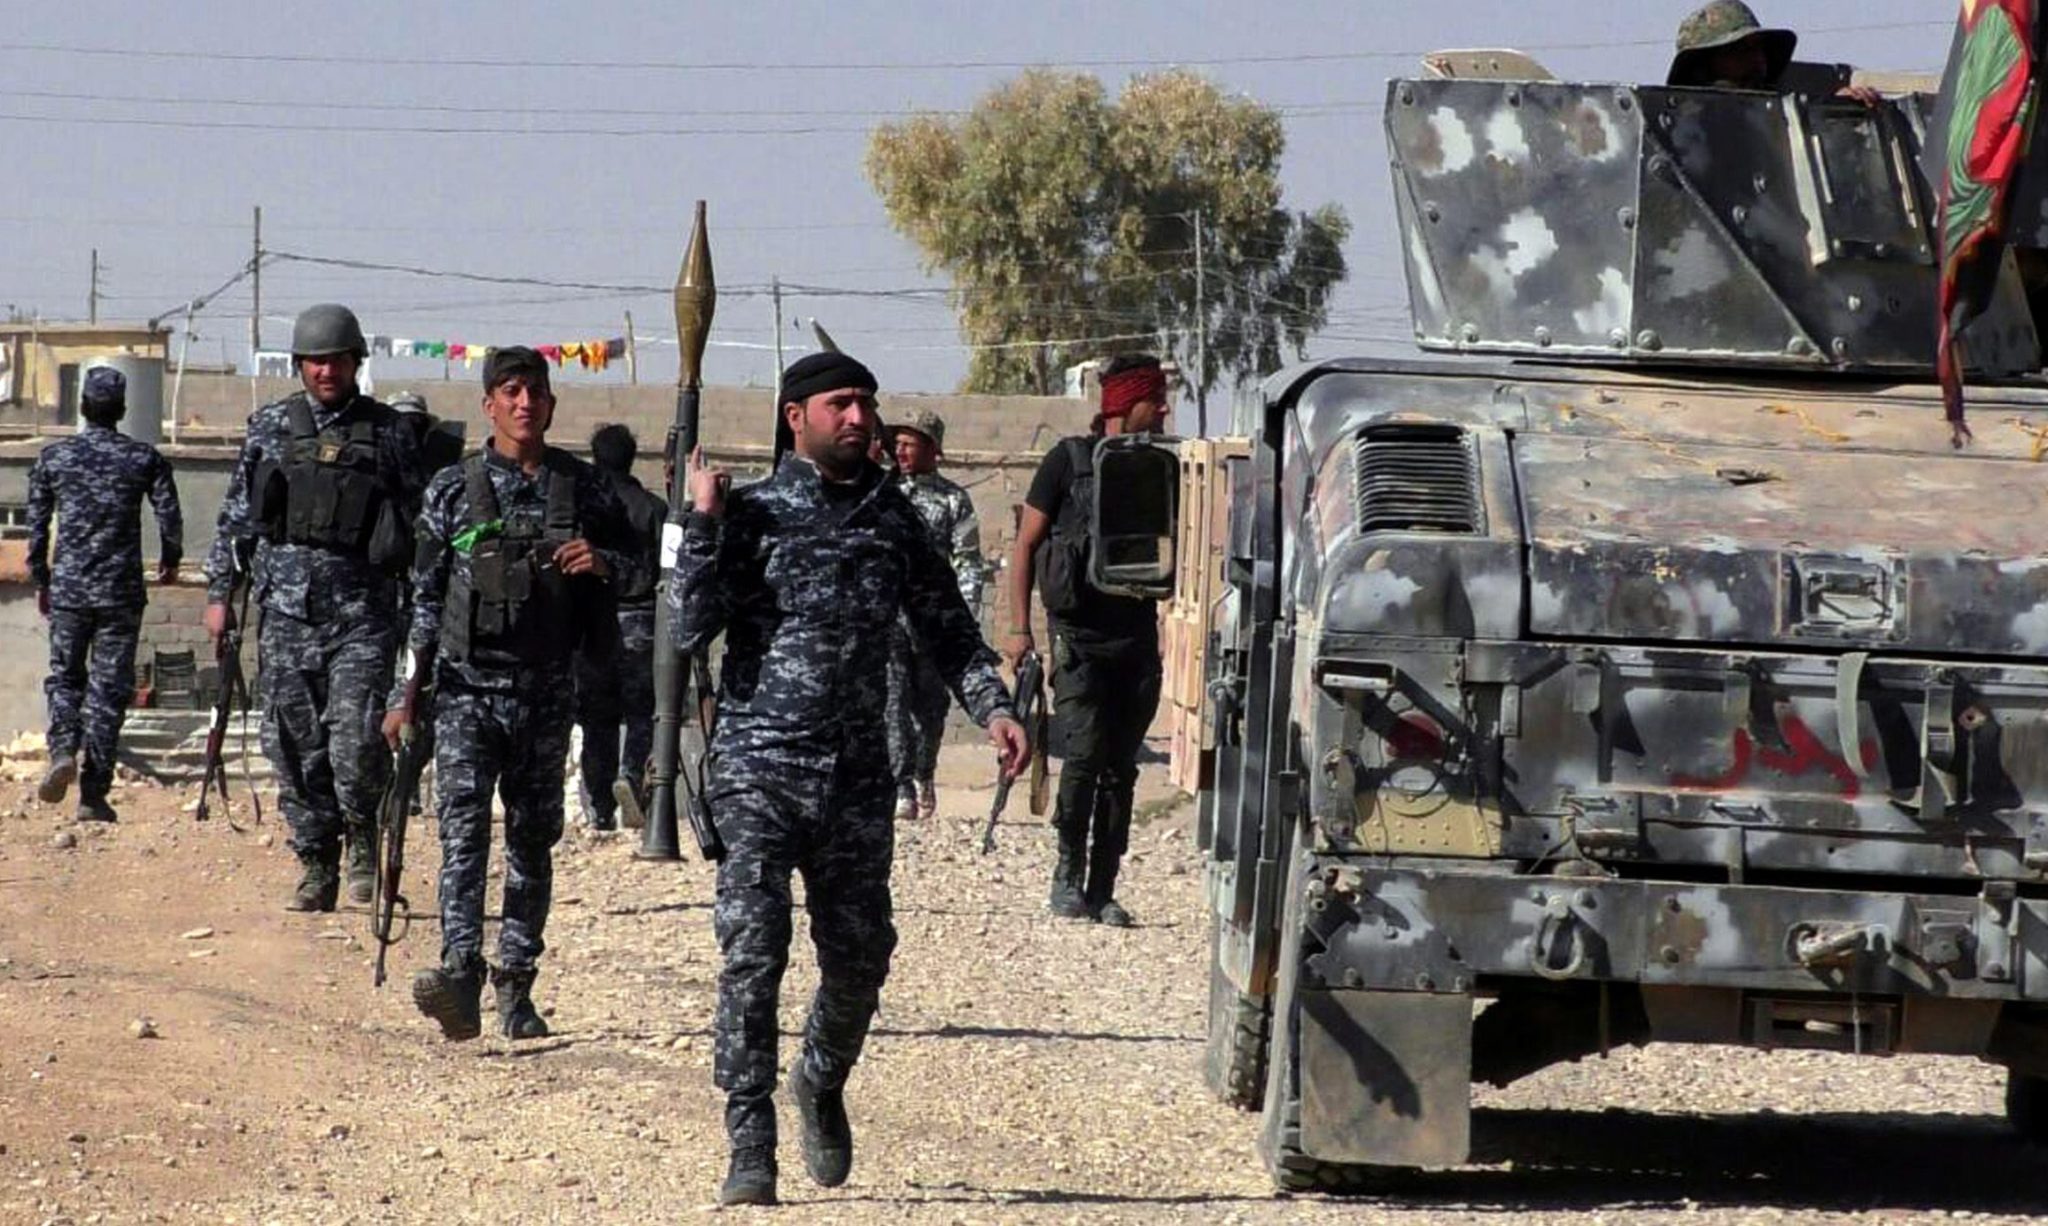 Irackie siły specjalne biorą udział w ofensywie przeciwko Państwu Islamskiemu. Południowy Mosul, Irak, 5 listopada 2016